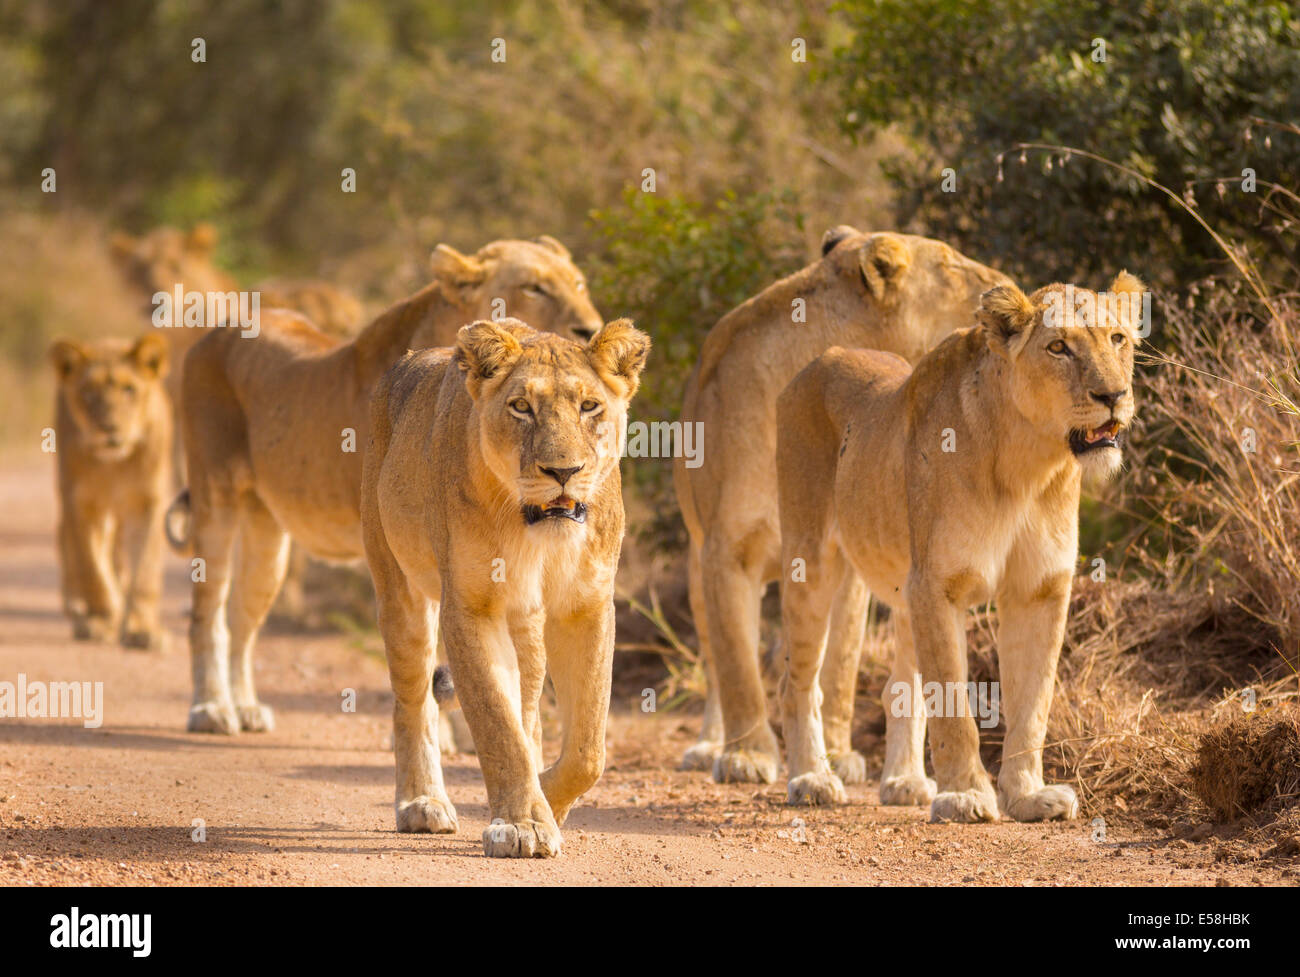 Le parc national Kruger, AFRIQUE DU SUD - Chasse de Pride of lions près de Biyamiti Camp. Panthera leo Banque D'Images